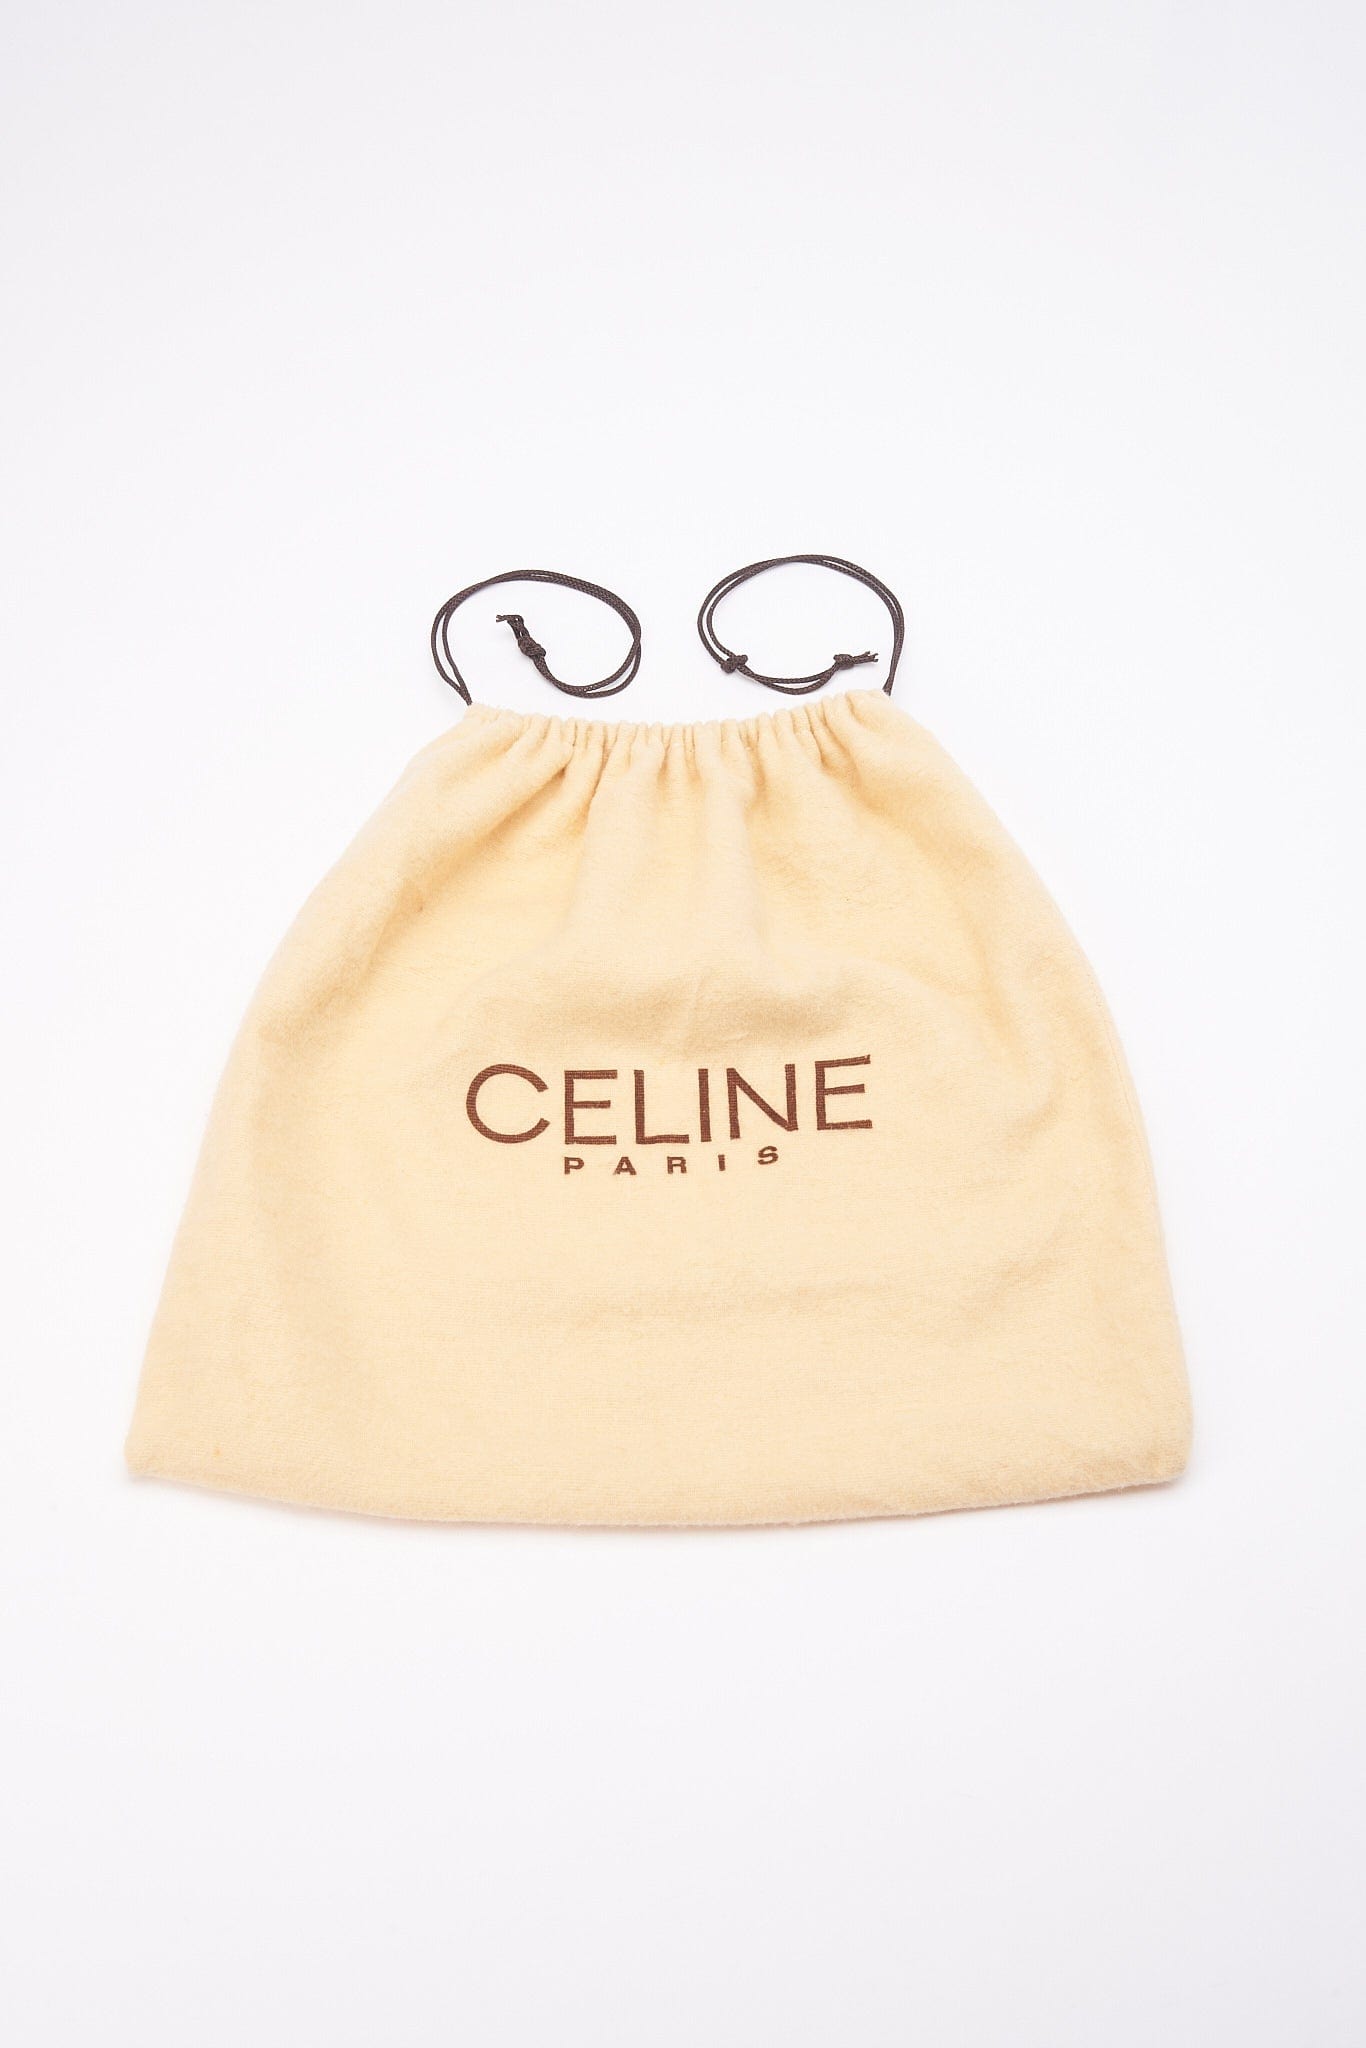 CELINE Paris - BAG model 